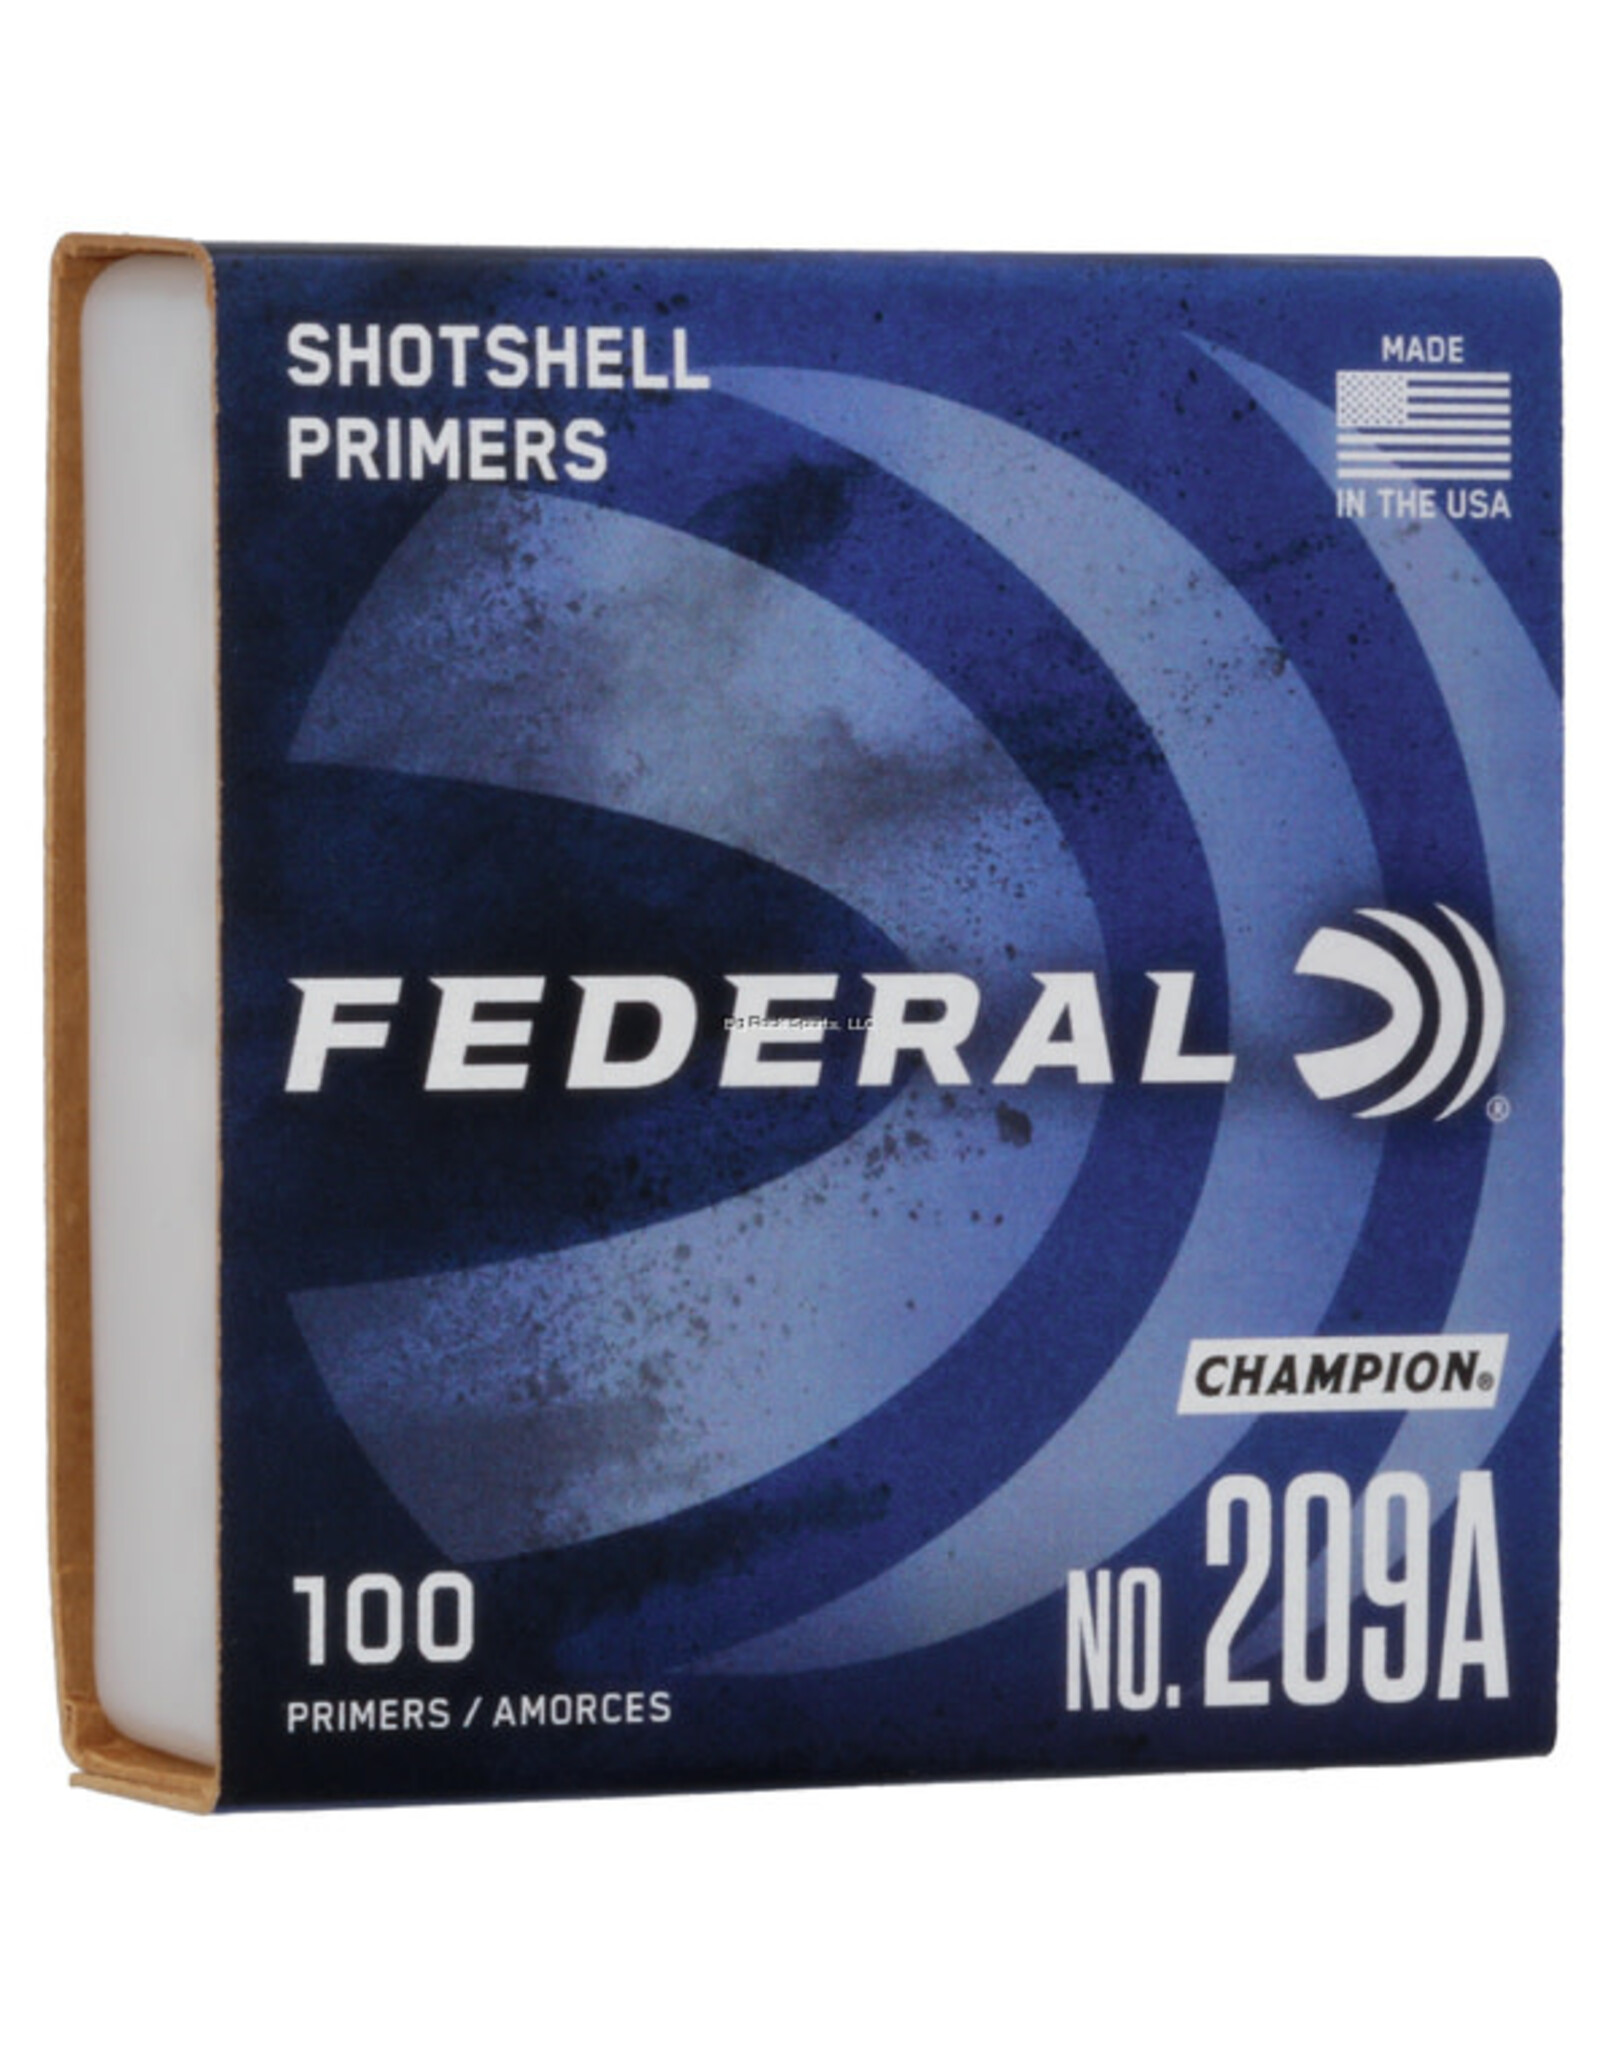 Federal Federal 209A Shotshell Primer, 100 Ct